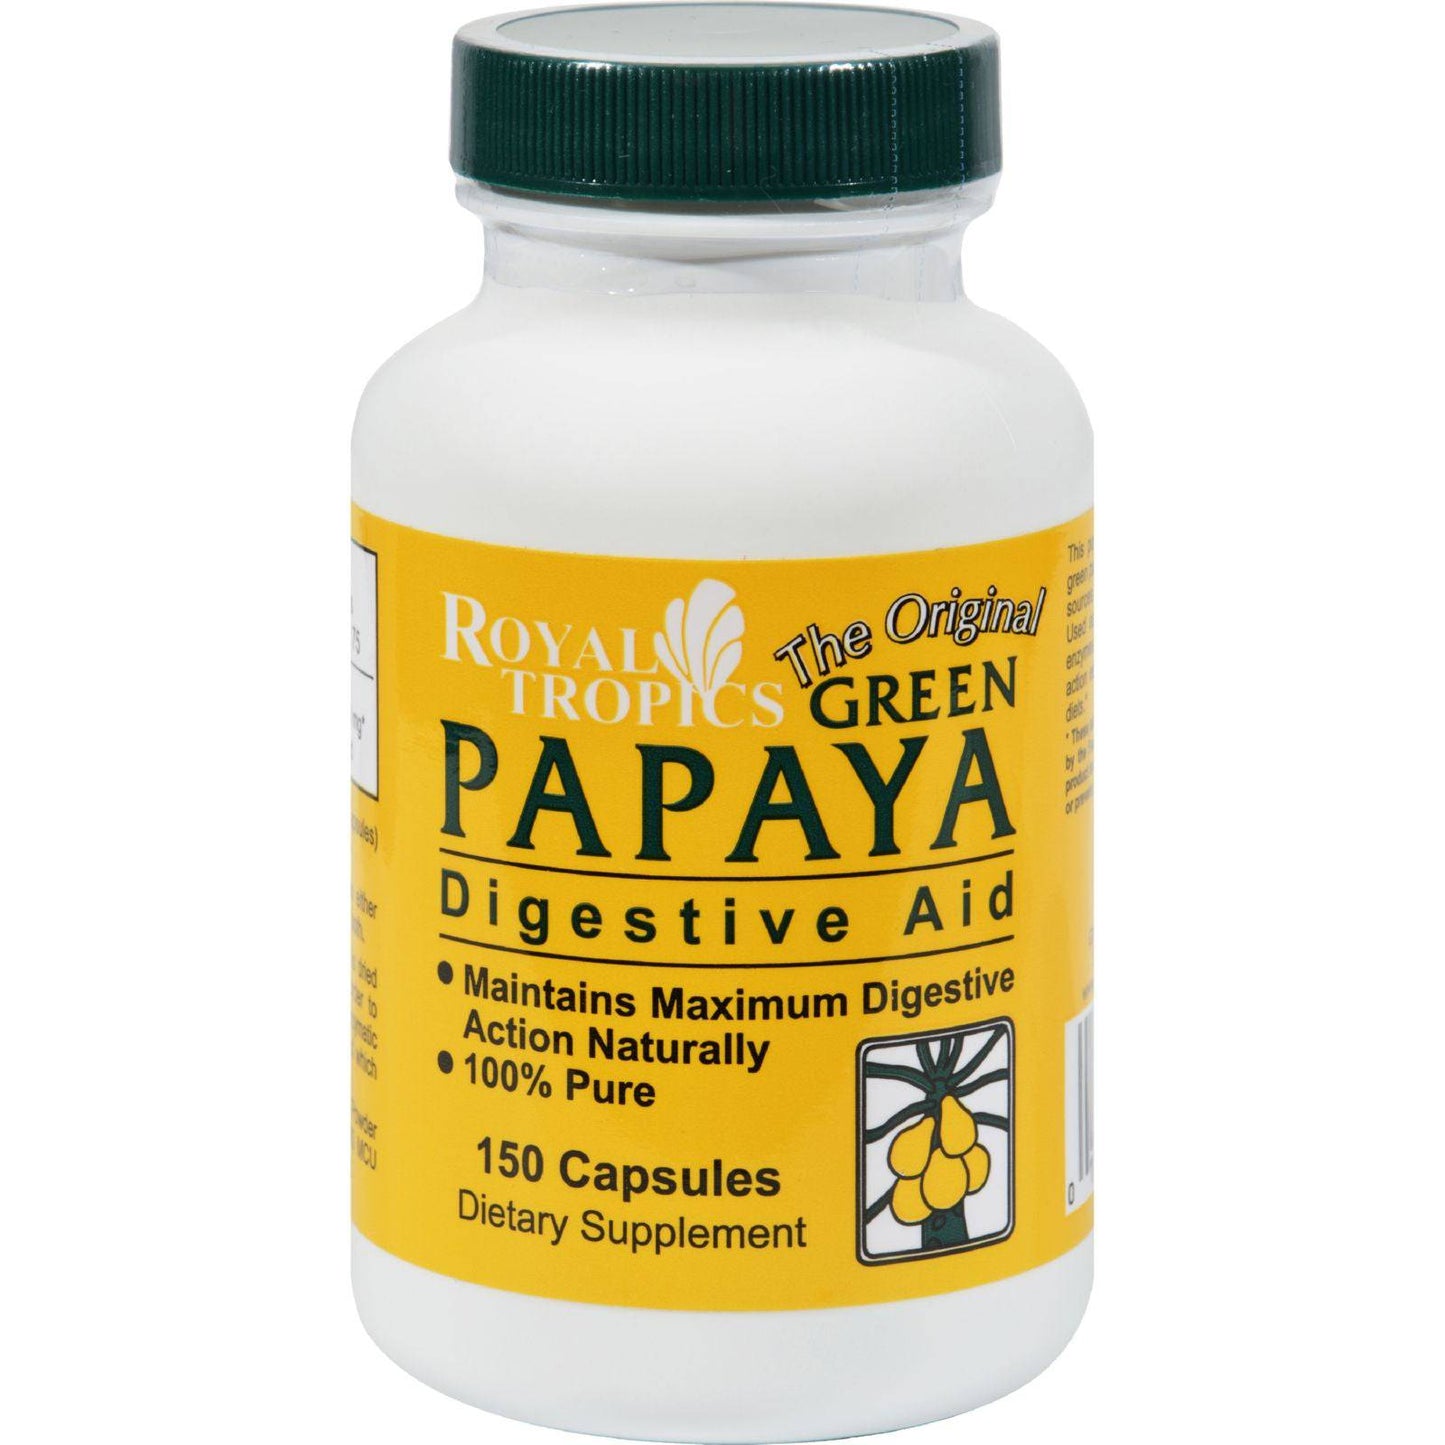 Buy Royal Tropics The Original Green Papaya Digestive Aid - 150 Capsules  at OnlyNaturals.us